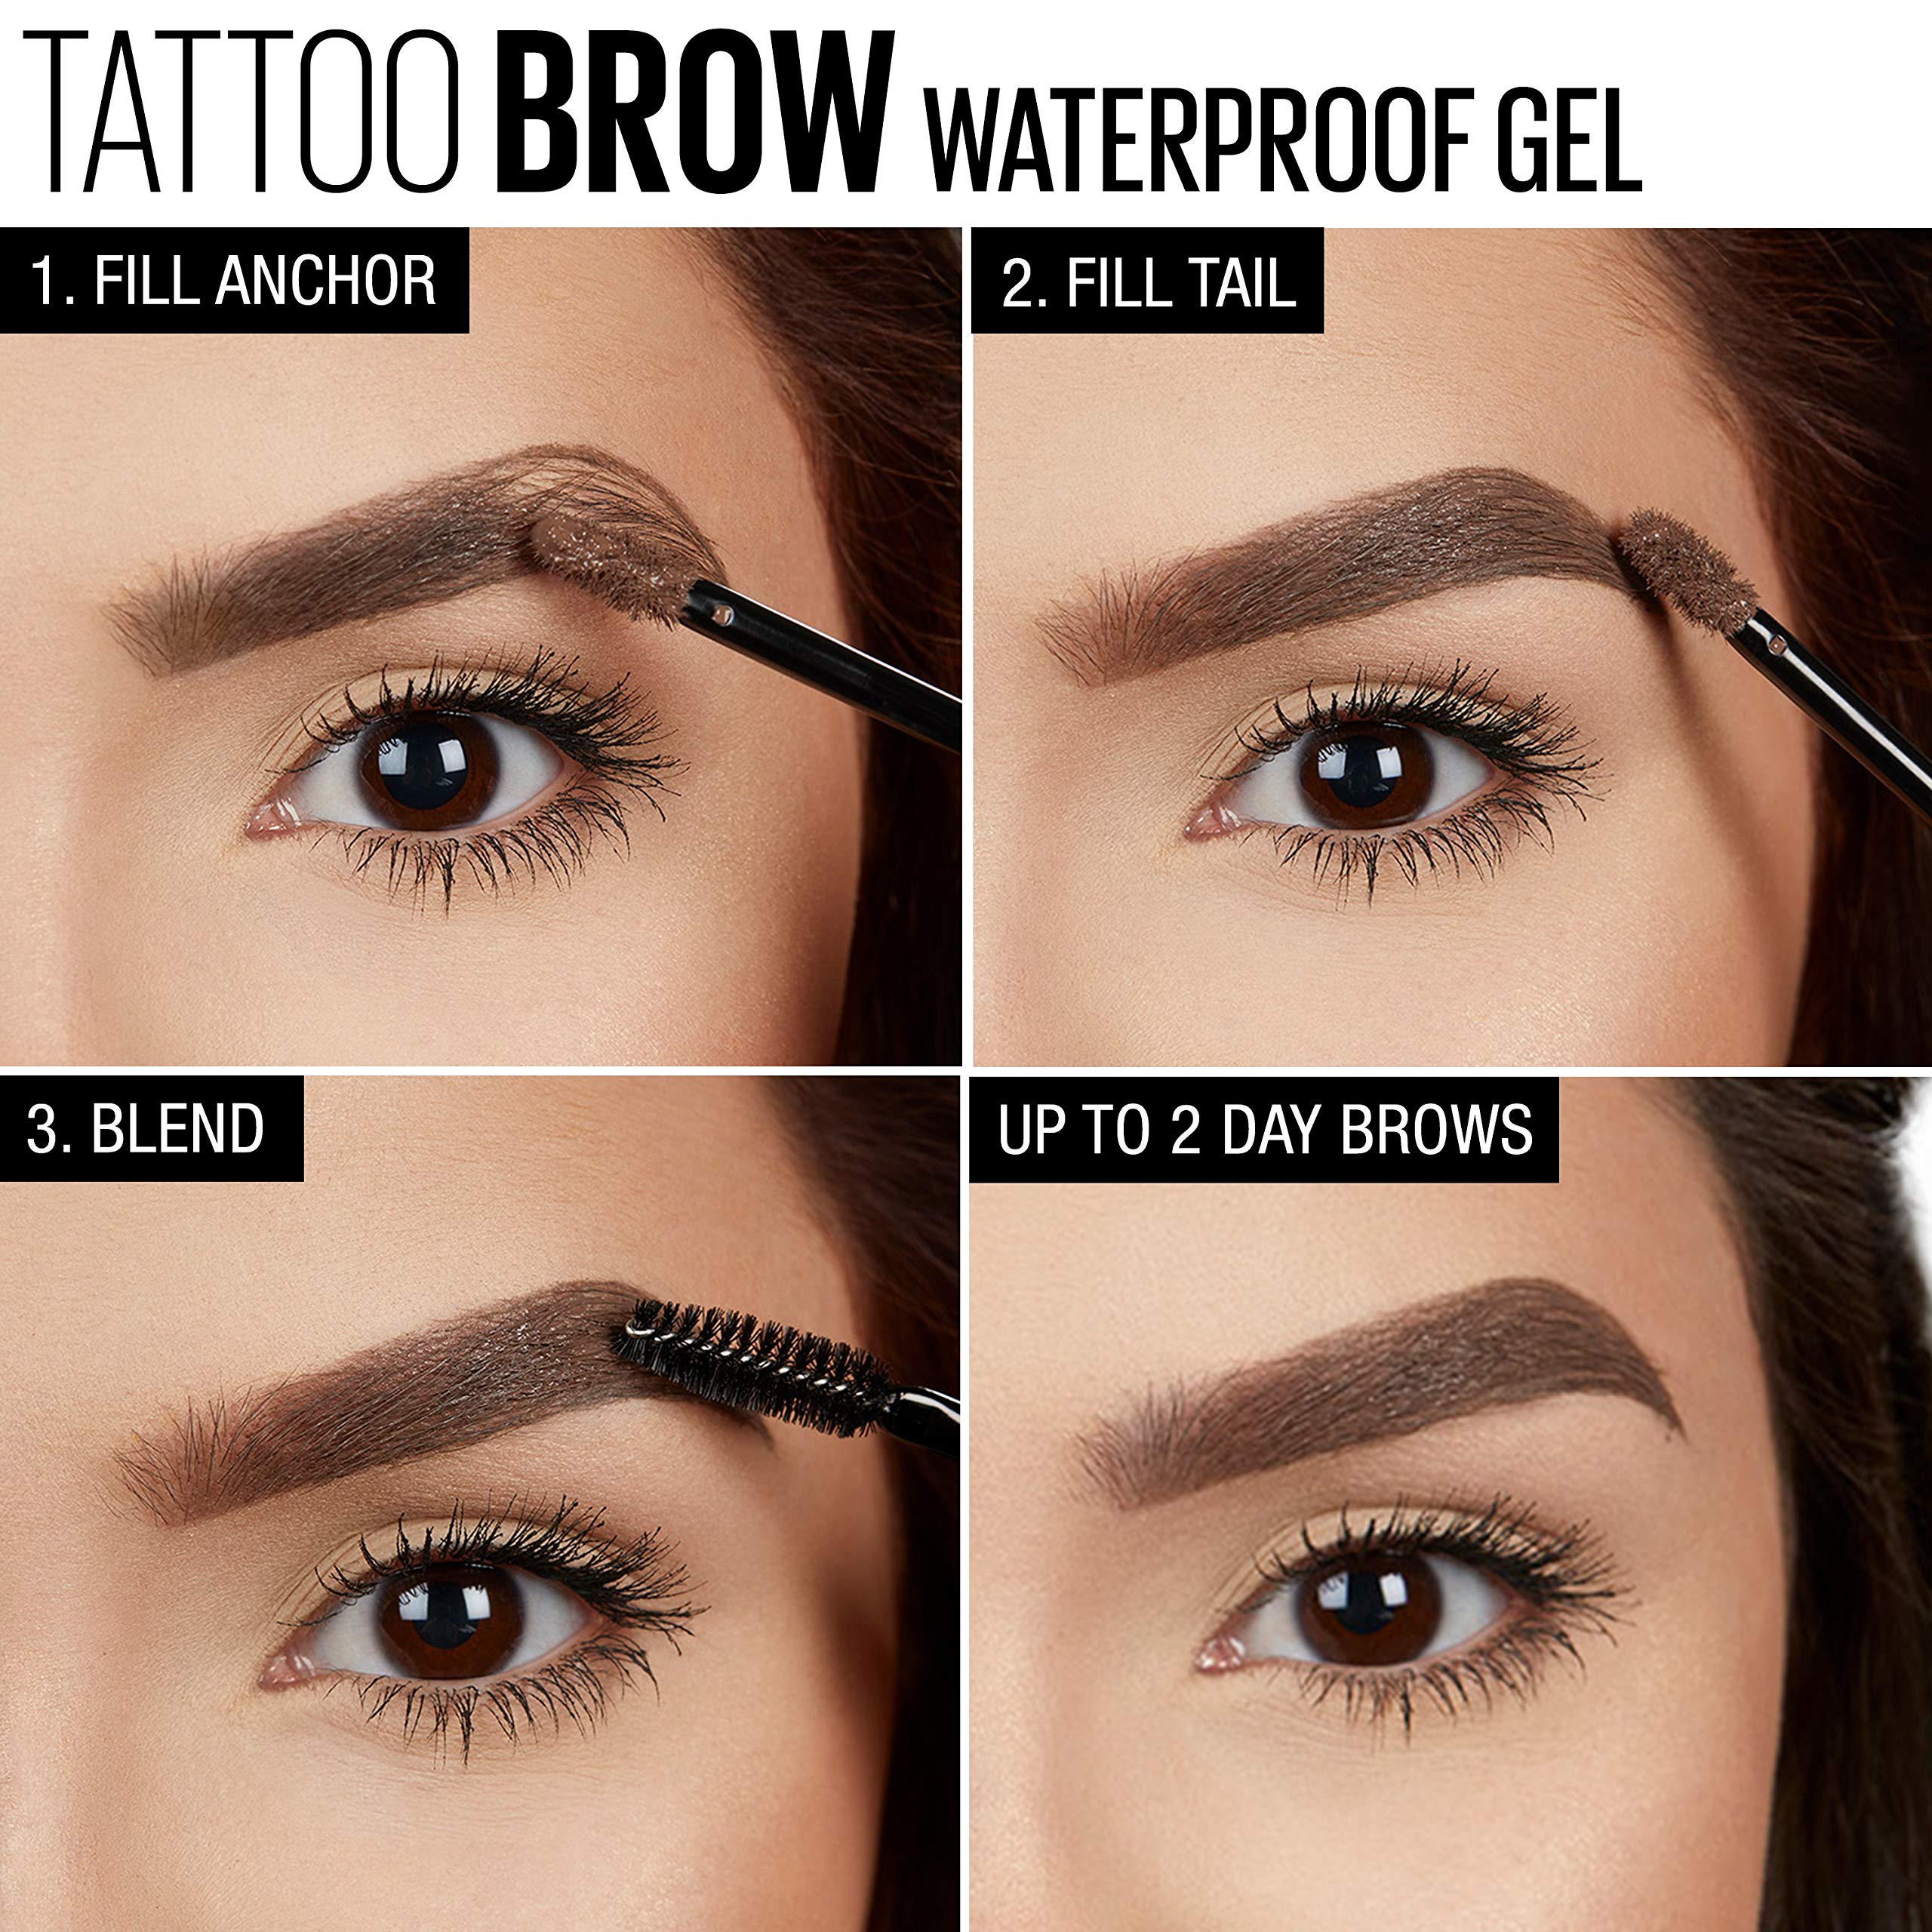 Maybelline TattooStudio Waterproof Eyebrow Gel Makeup, Deep Brown, 1 Count